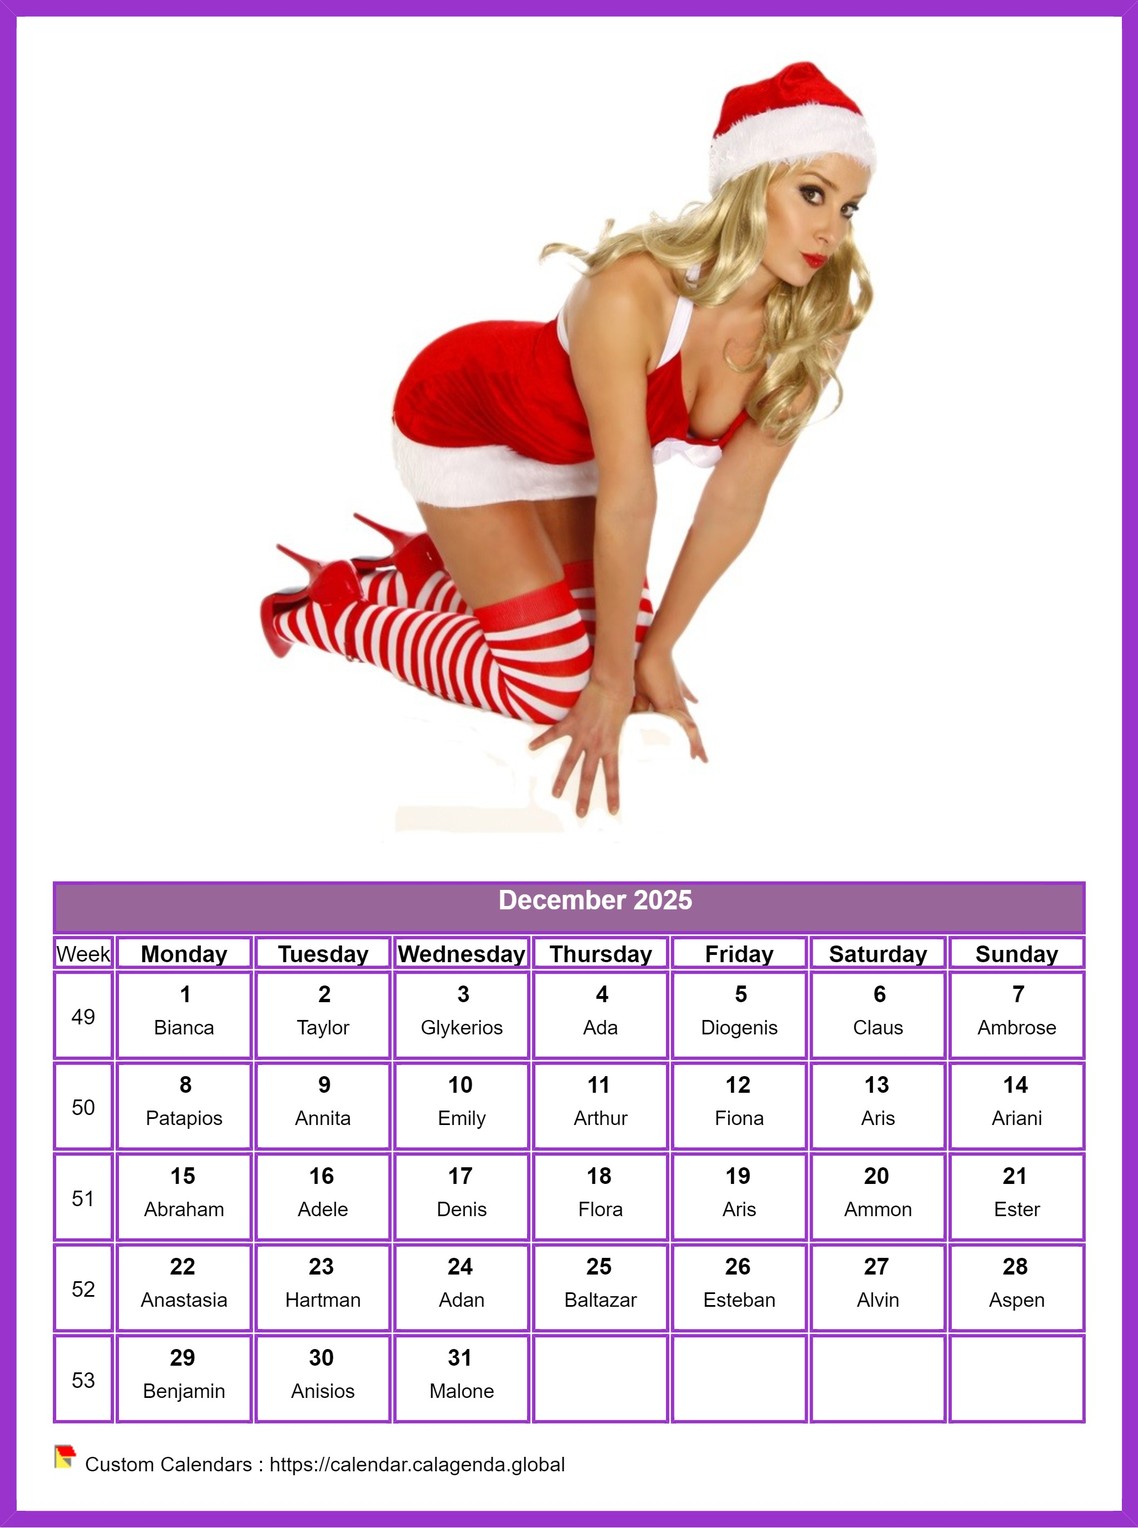 Calendar December 2025 women